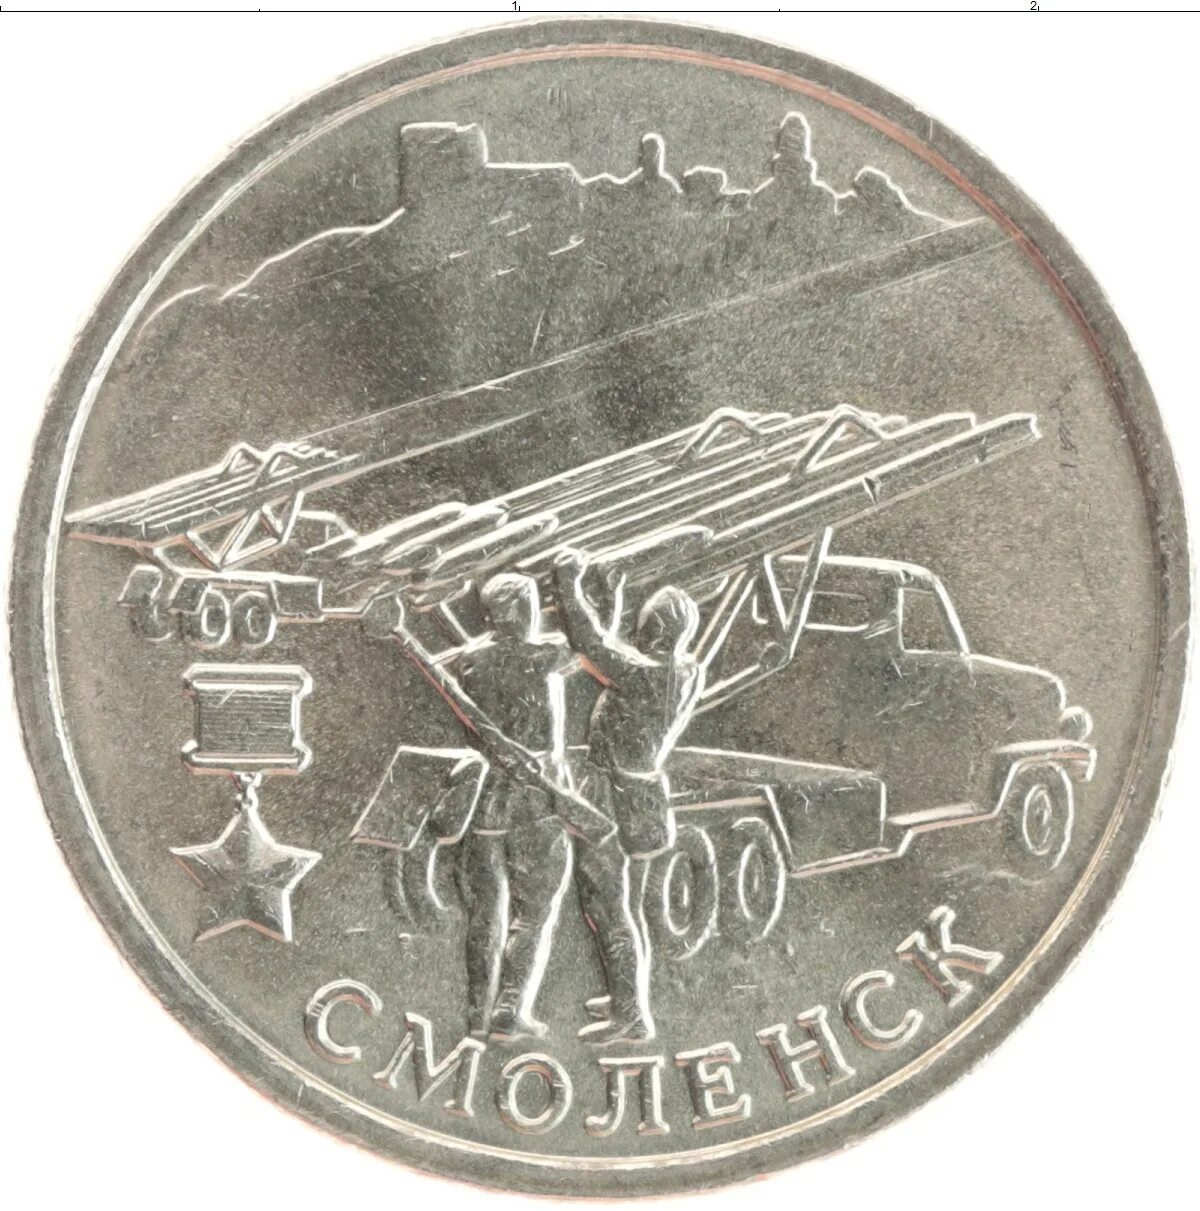 Смоленские монеты. Памятная монета Смоленск. Монета 2 рубля Смоленск. 2 Рубля 2000 Смоленск. Юбилейные монеты 2000 годов